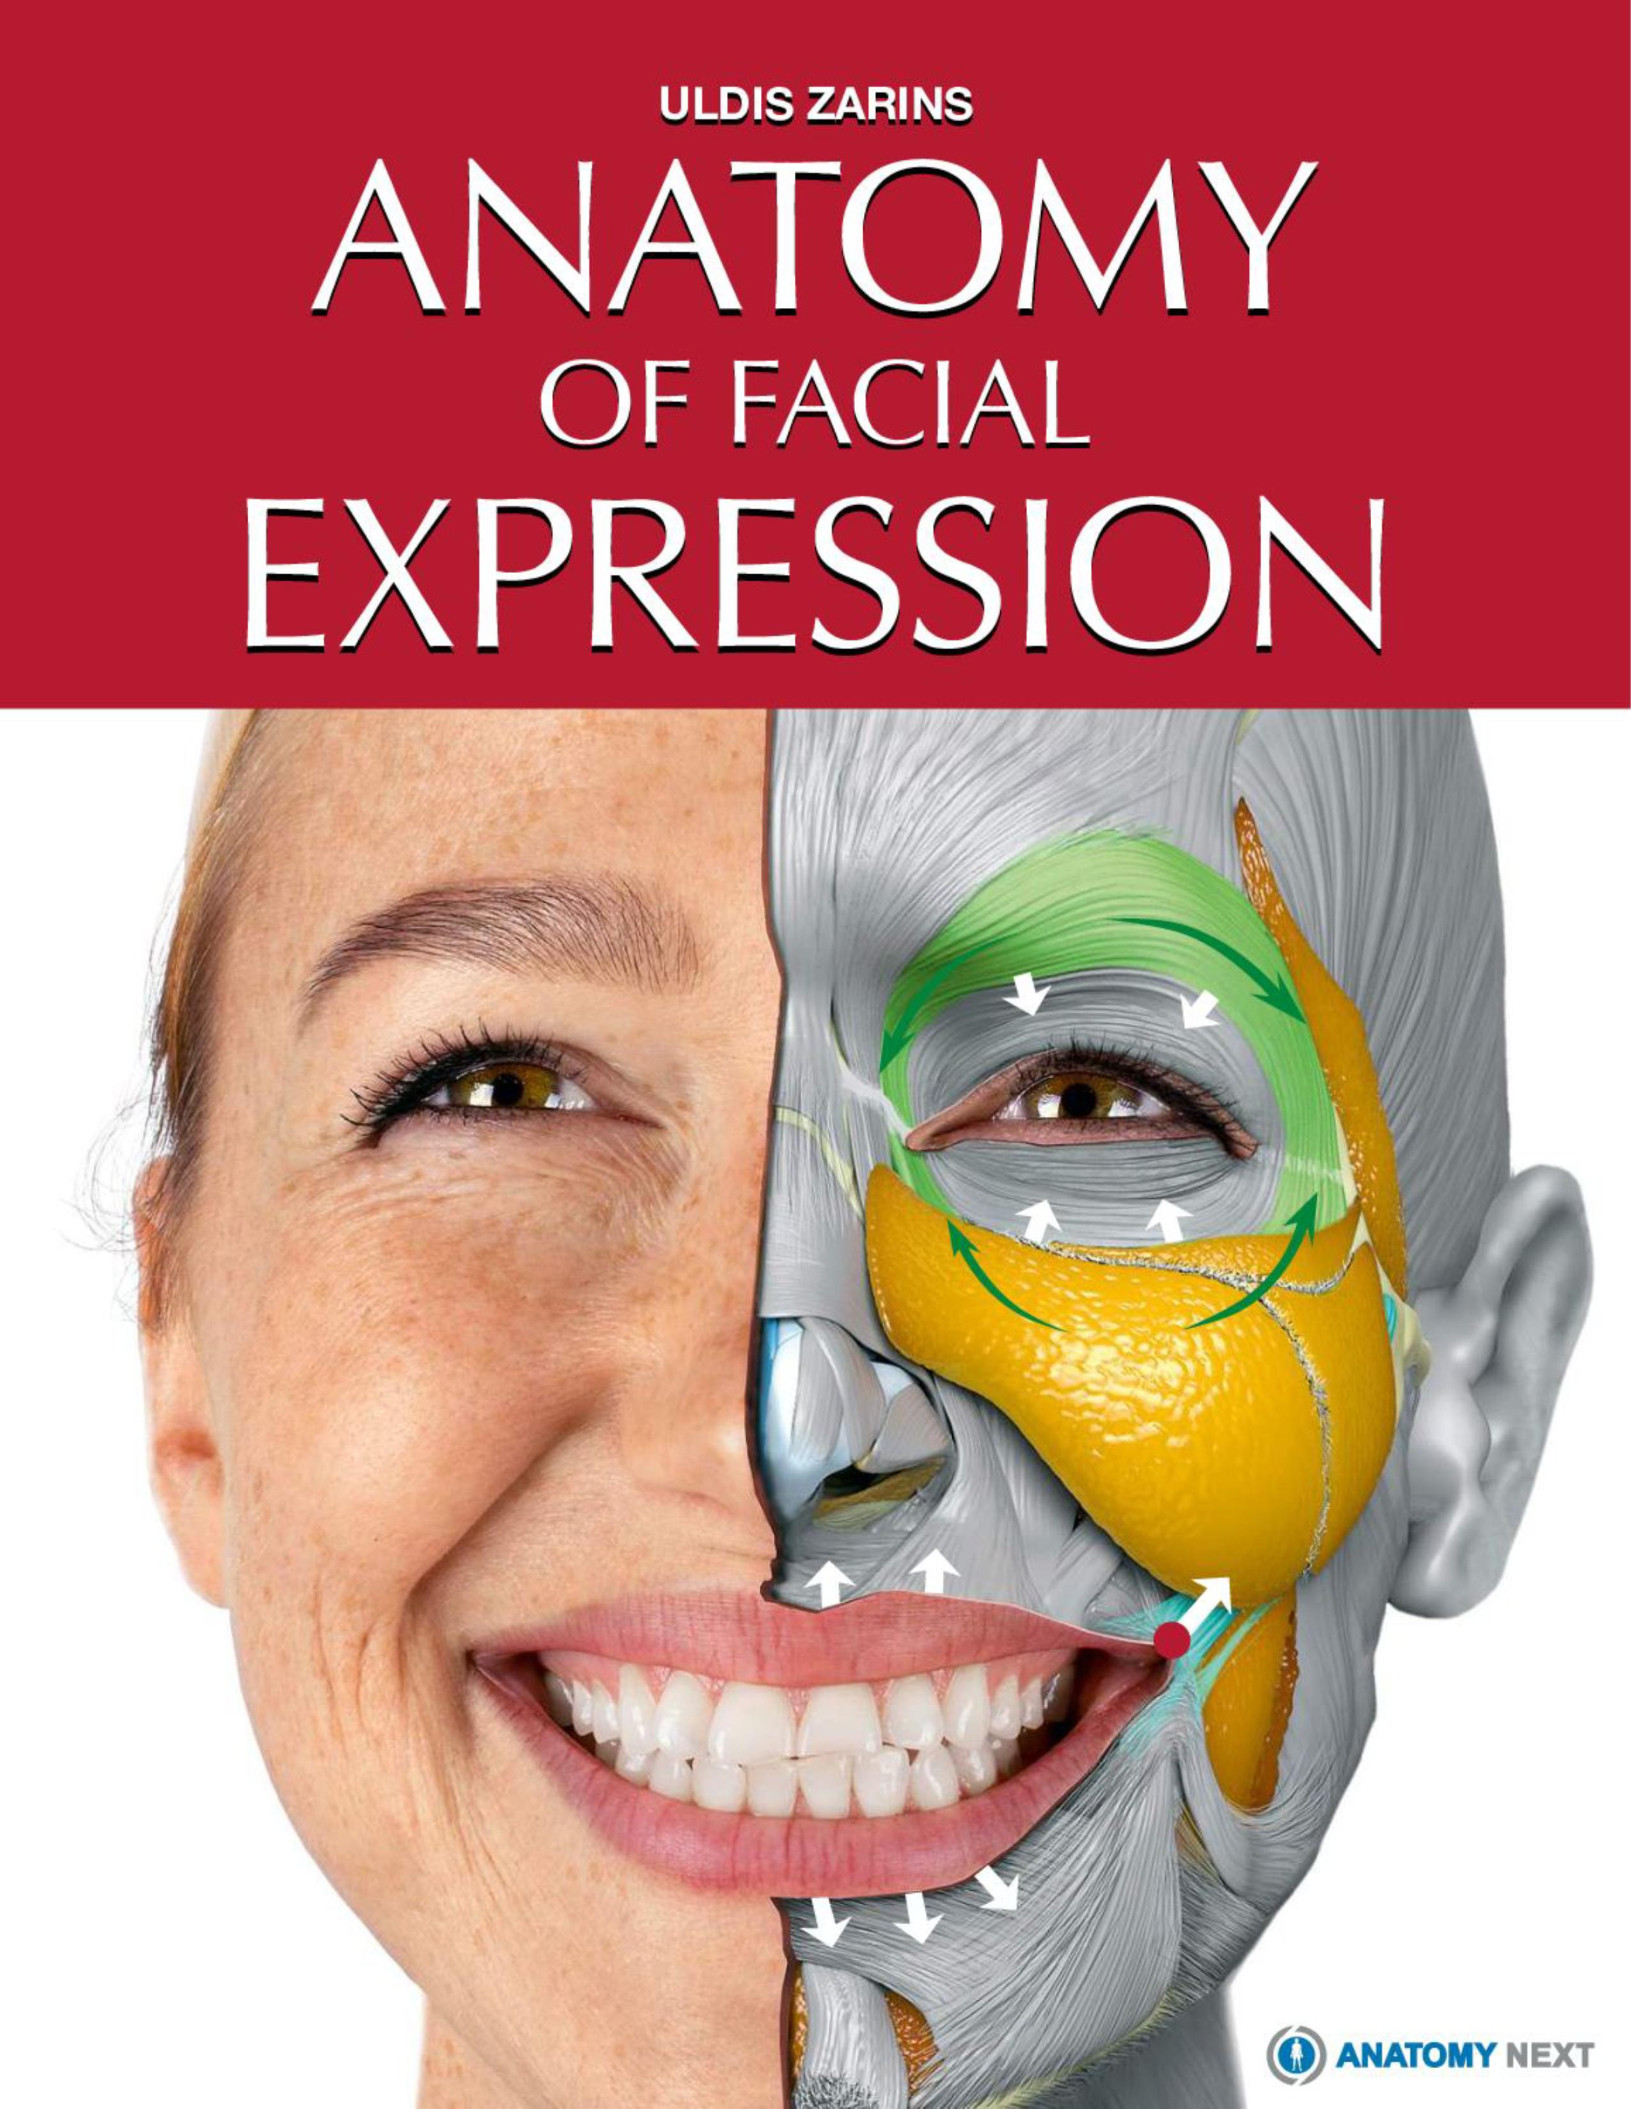 Cấu trúc biểu cảm trên khuôn mặt sẽ giúp bạn hiểu rõ những cảm xúc và tâm trạng của người khác. Để có thể hiểu được ngôn ngữ cơ thể của người khác, bạn cần phải tìm hiểu về cách mà biểu cảm trên khuôn mặt được tạo ra. Hãy xem hình ảnh về cấu trúc biểu cảm trên khuôn mặt để tự mình xác định được những tín hiệu cơ thể của mình và người khác.